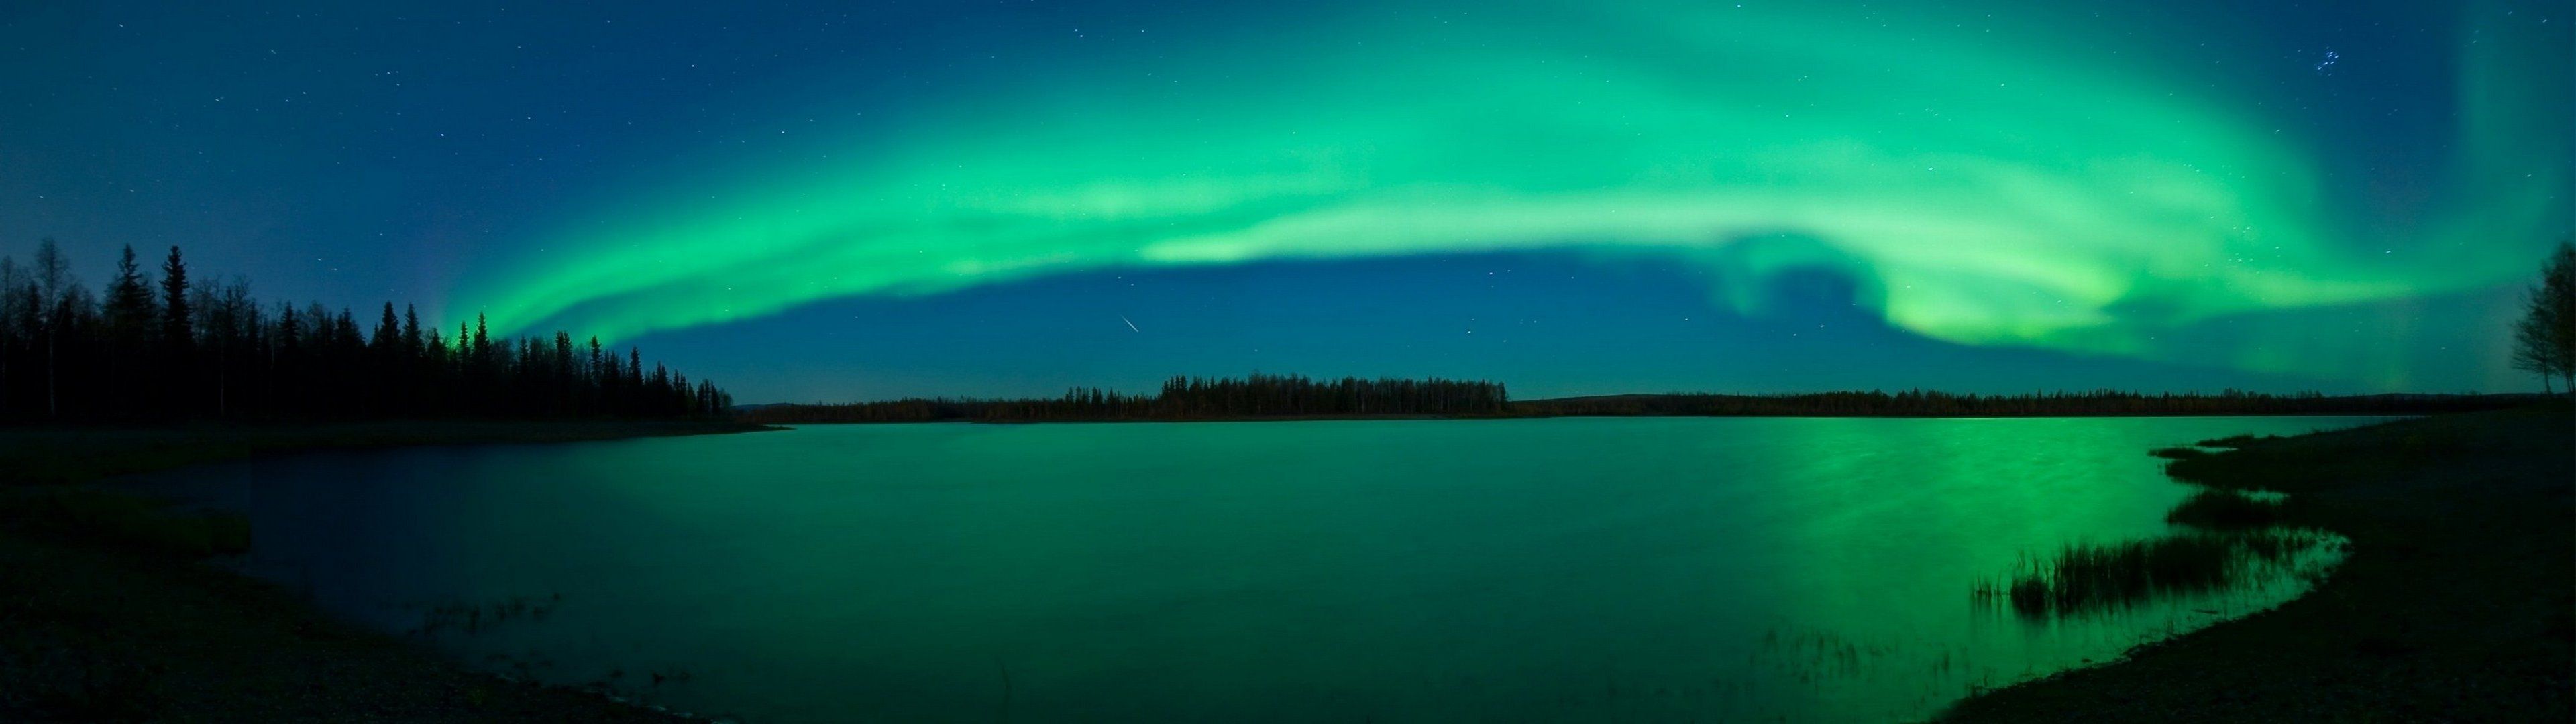 Aurora borealis lakes wallpaper 3840x1080 260380 WallpaperUP